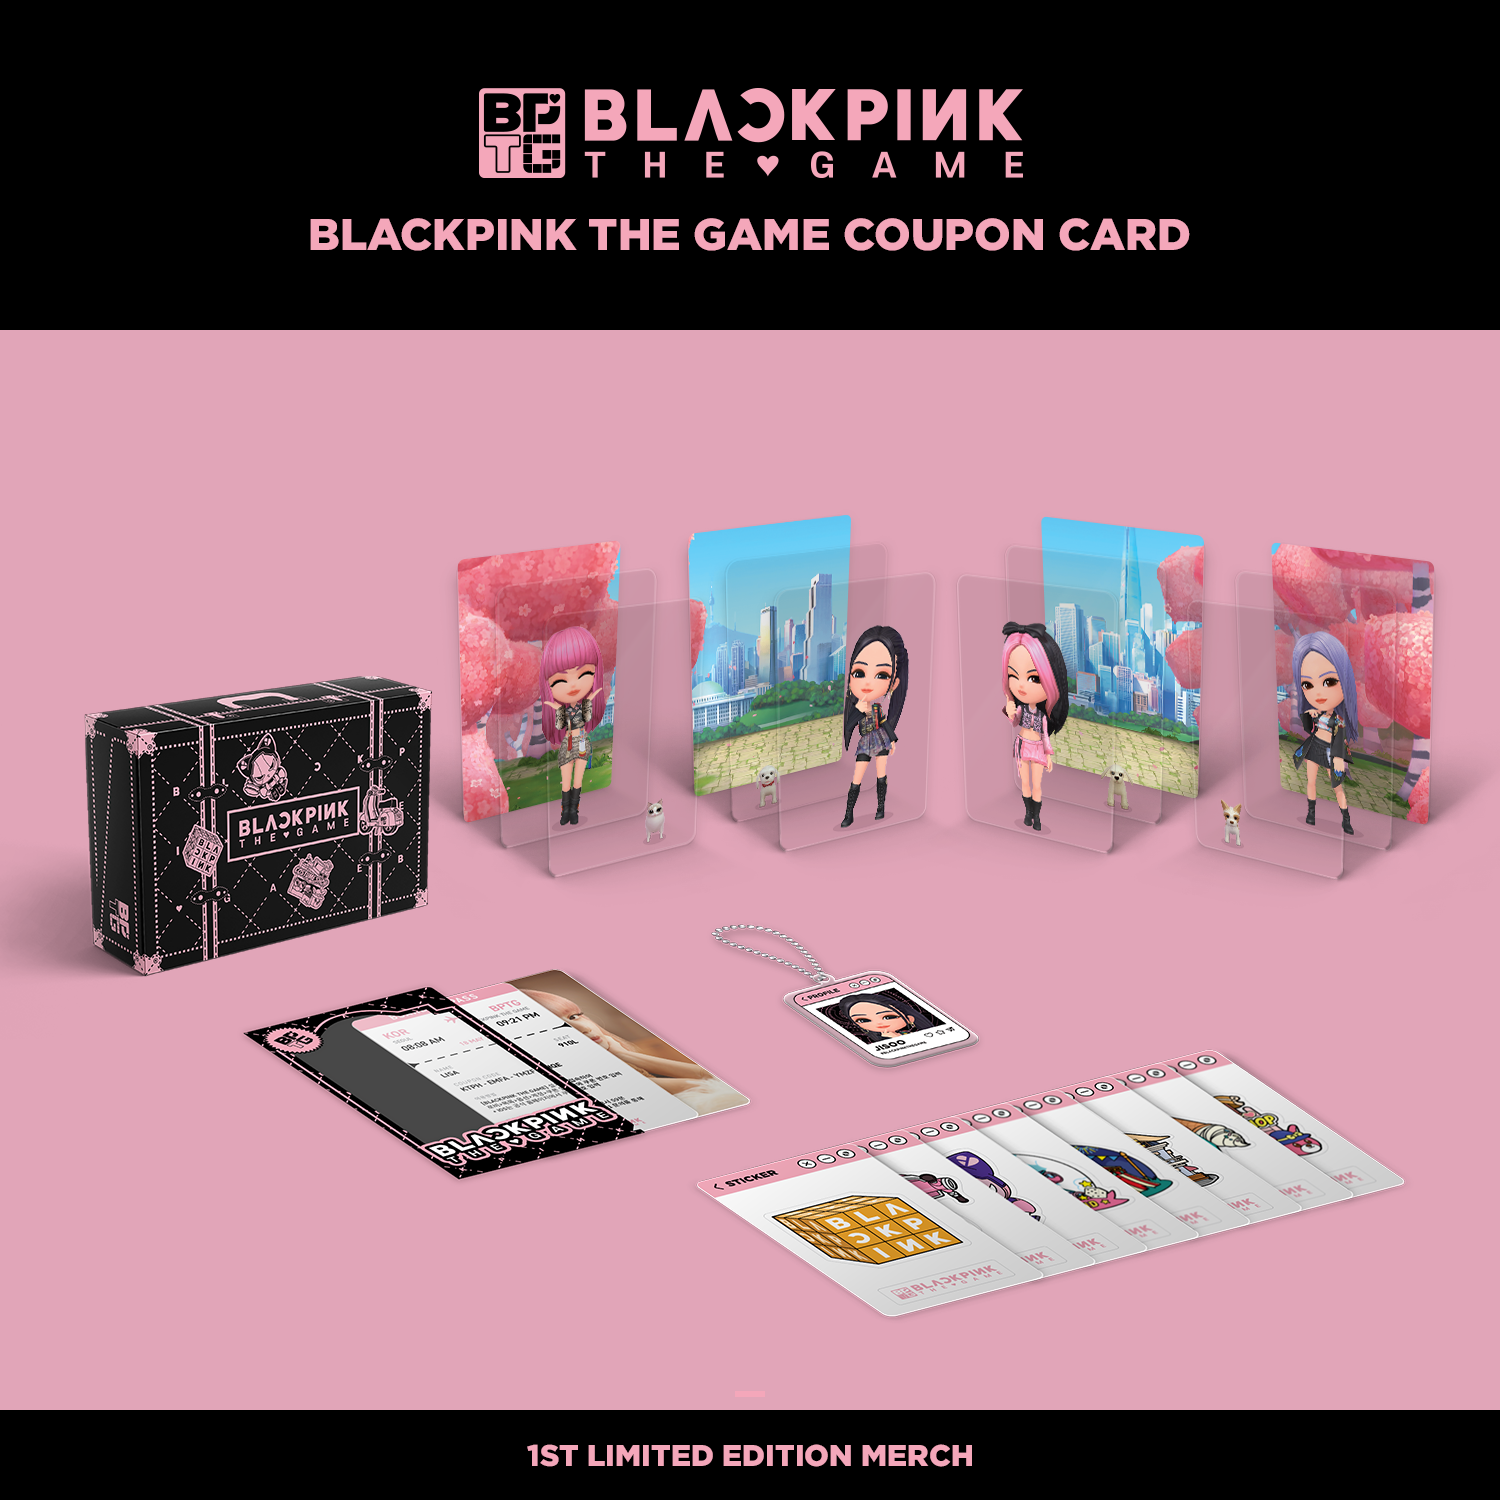 7pca/set Kpop Star BLACKPINK Photocard Small Card Collection Card acquista  in modo economico — spedizione gratuita, recensioni reali con foto — Joom